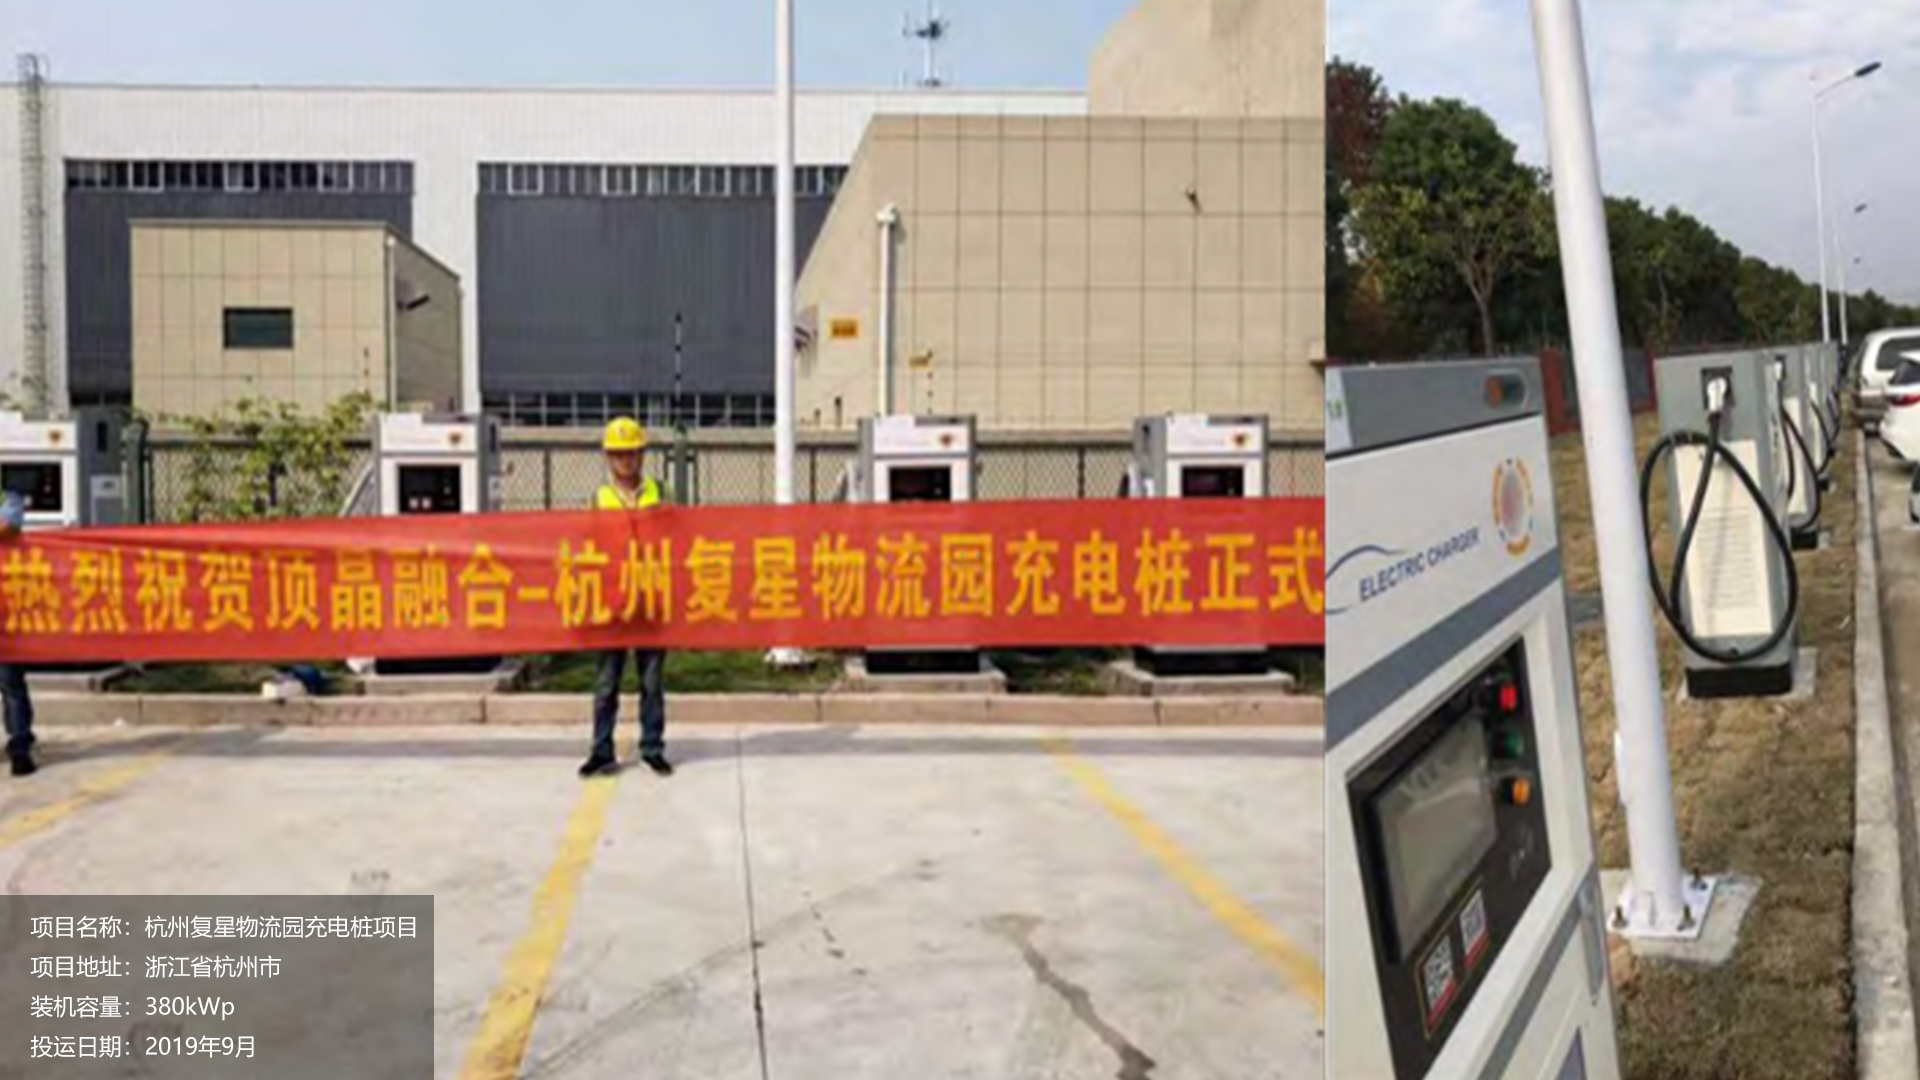 杭州复星物流园充电桩项目，投运日期2019年9月。			